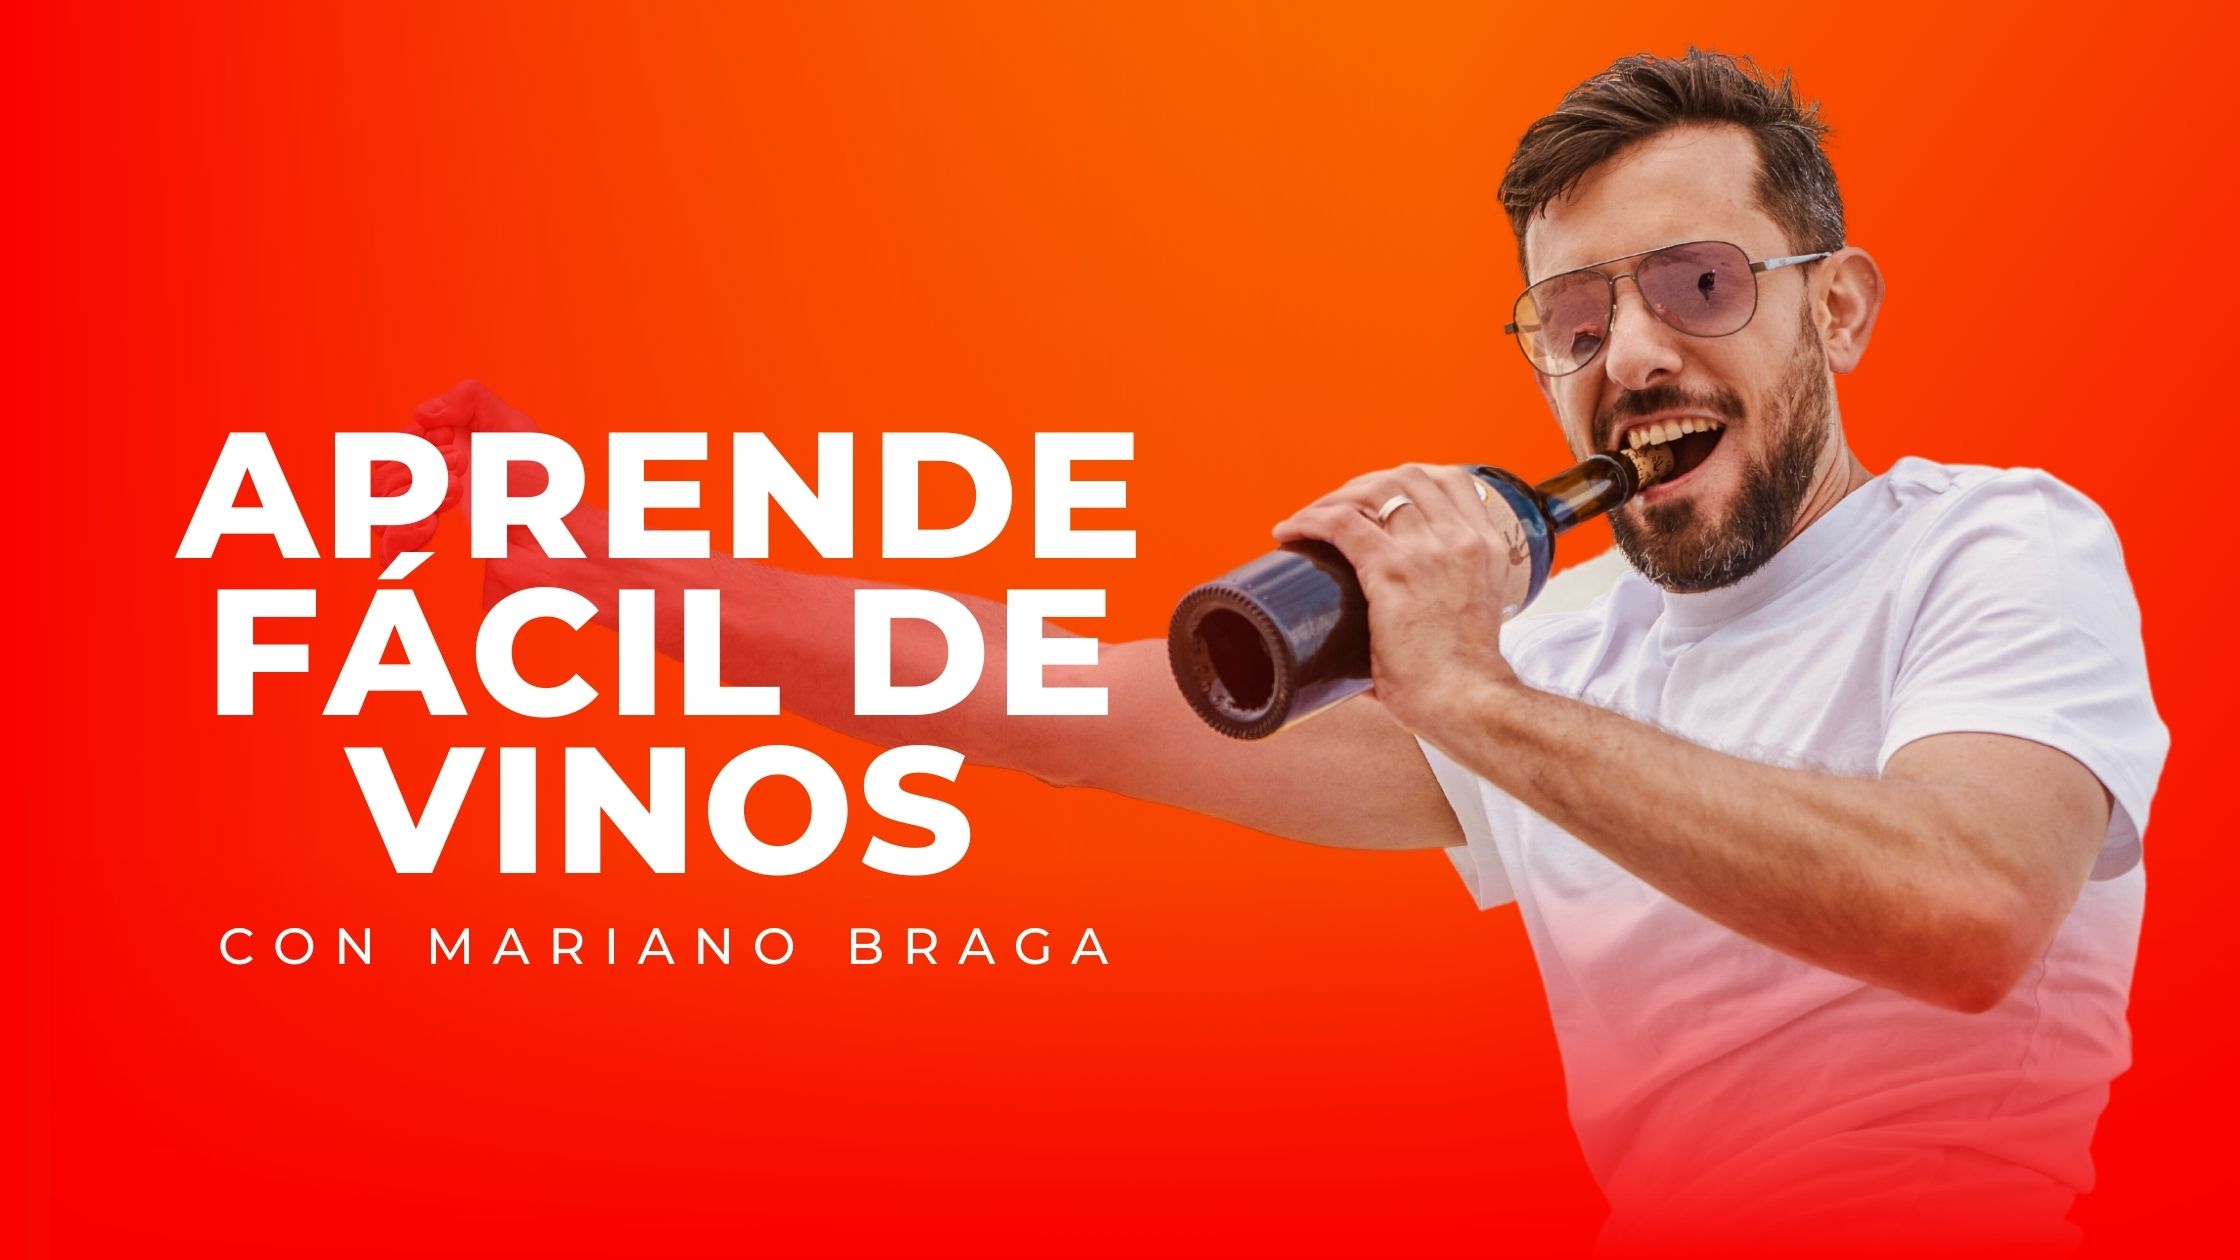 Curso de vinos gratis, con el sommelier Mariano Braga